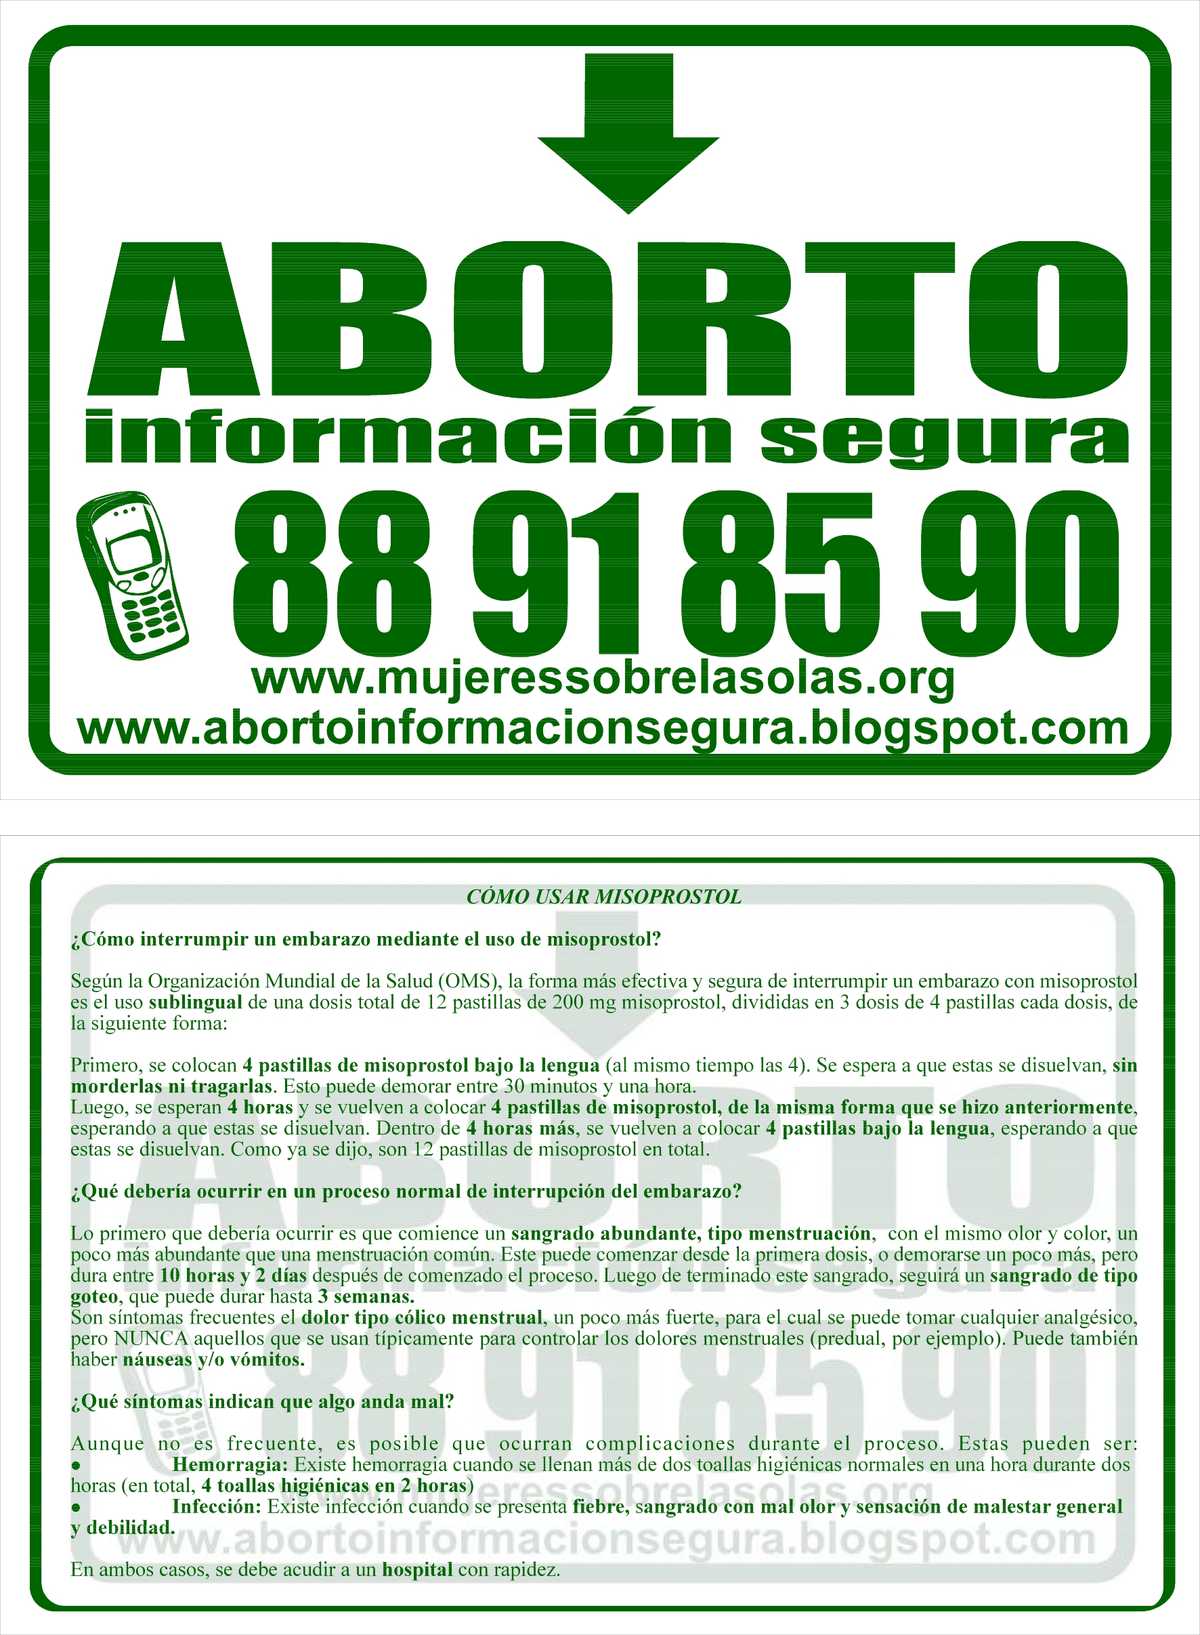 Flyer, Chilean Hotline